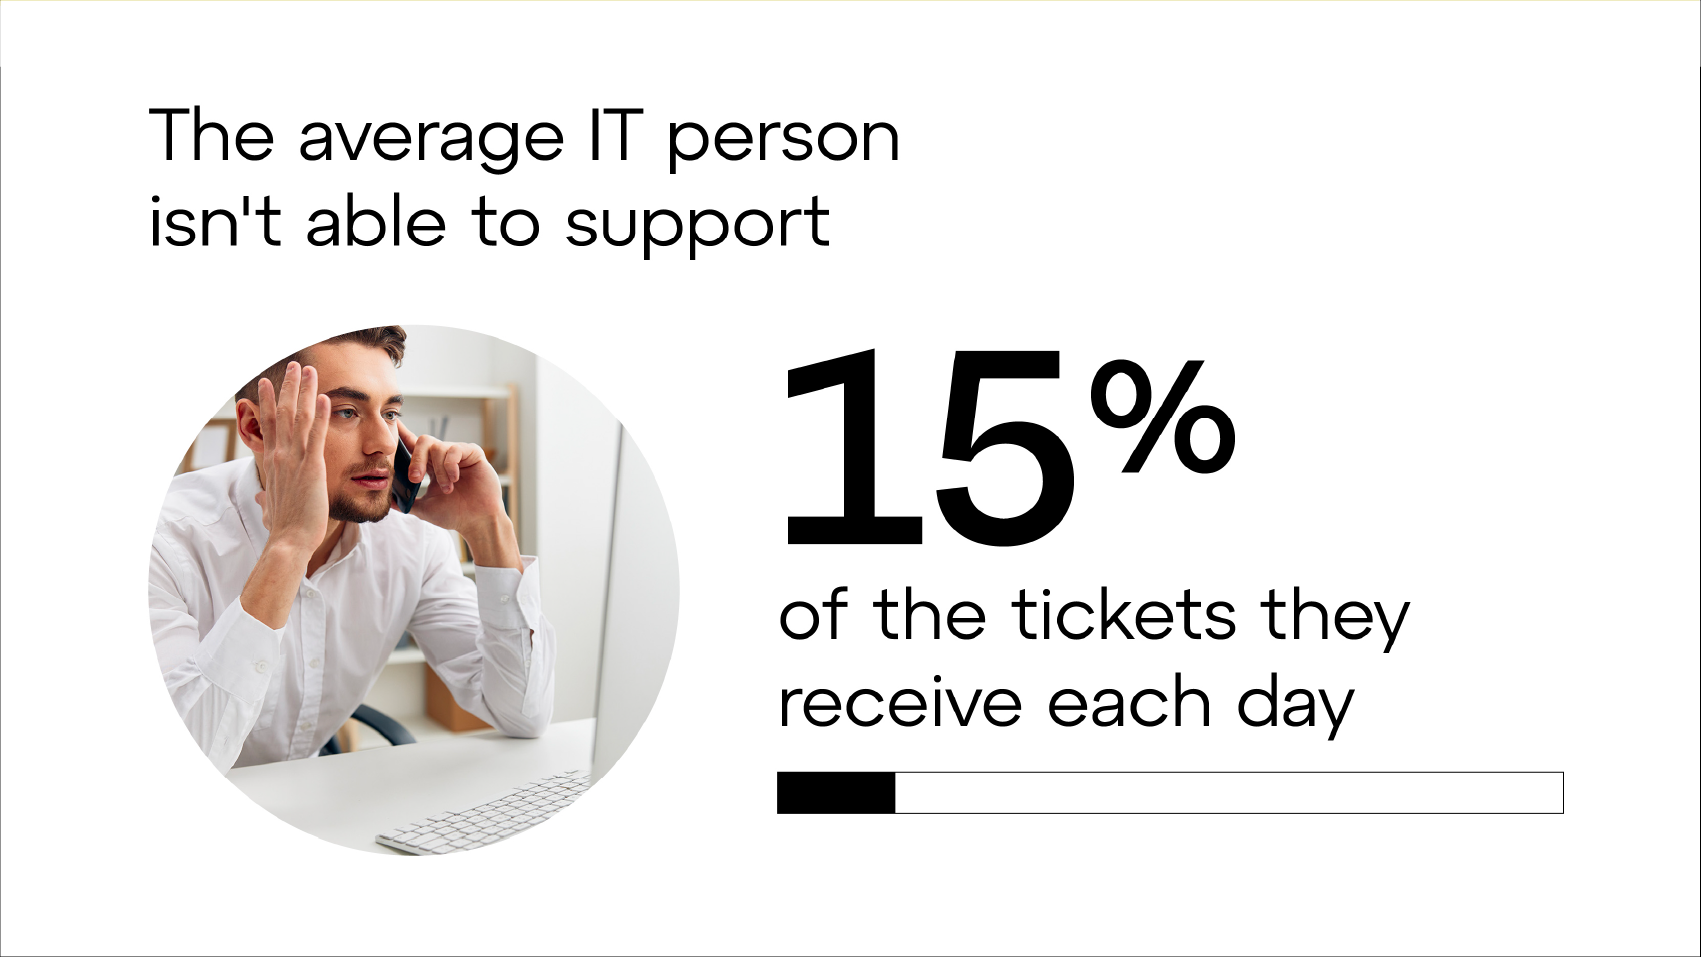 O profissional de TI médio não consegue atender a 15% dos tickets que recebem em um dia.